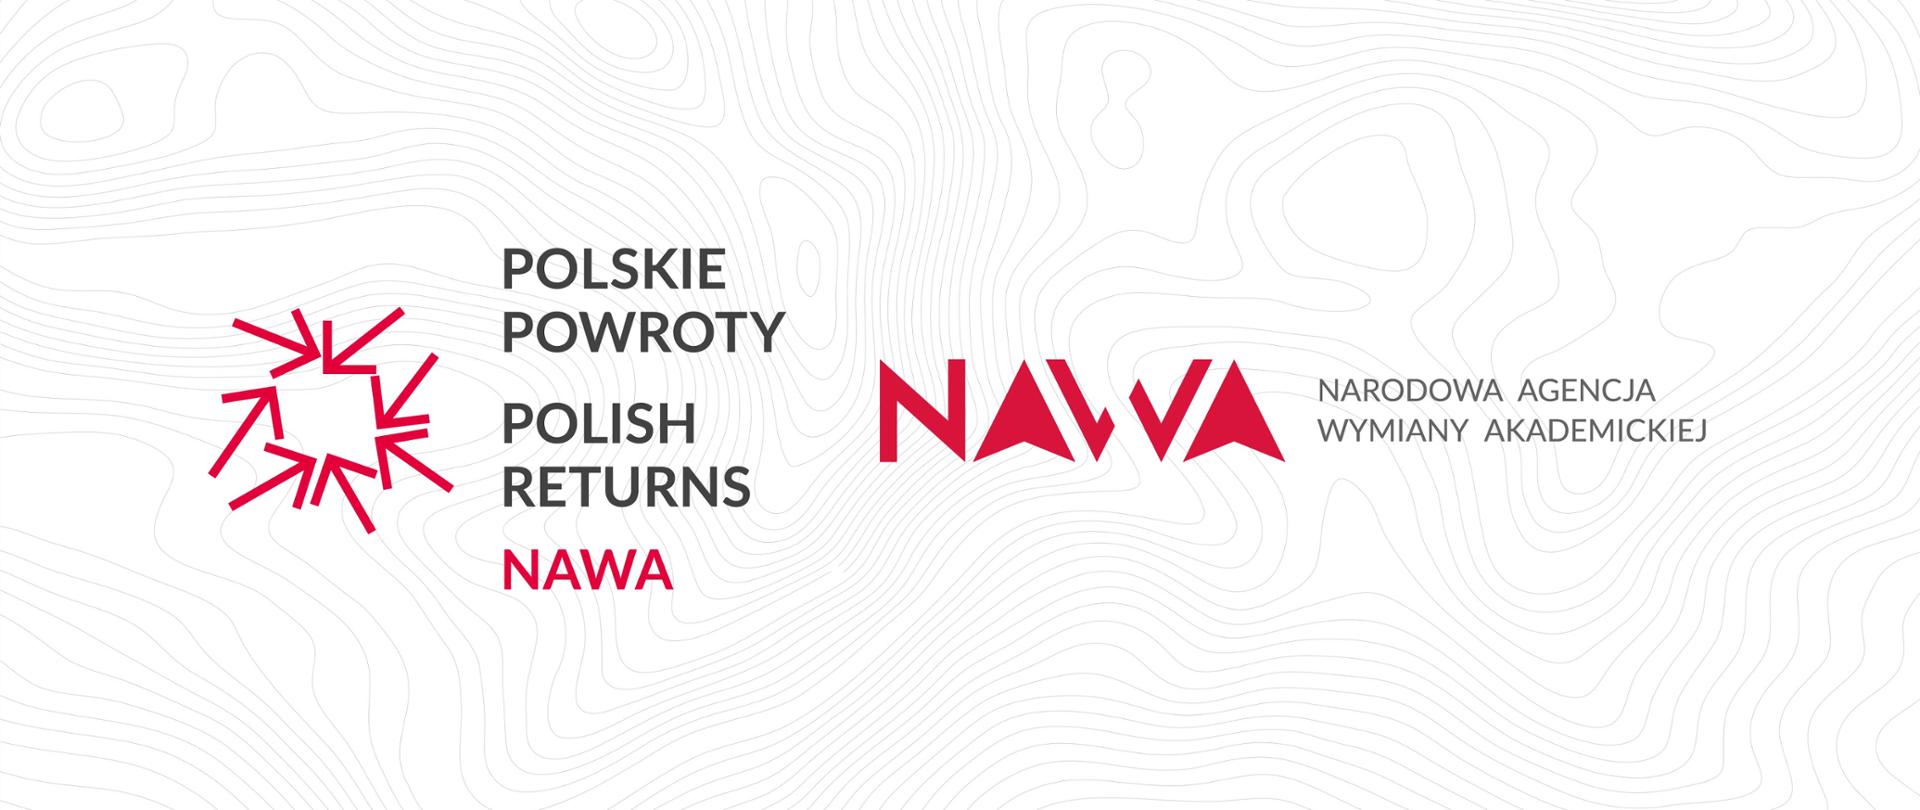 NAWA_Polskie_Powroty_1